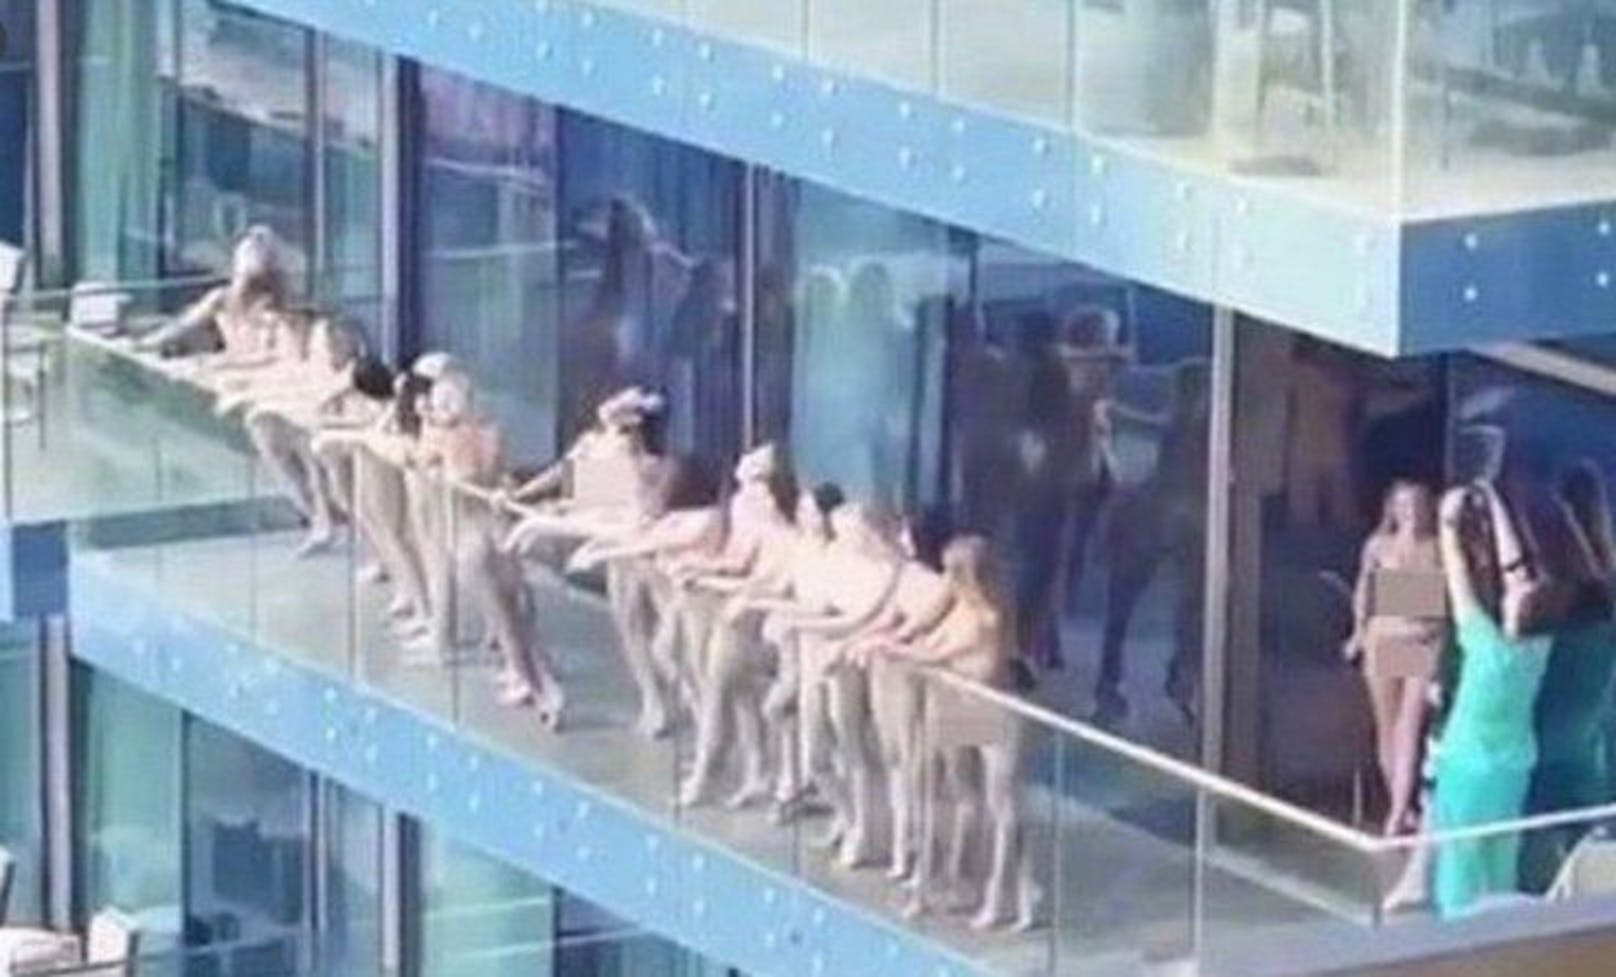 Models, die in Dubai nackt auf dem Balkon posierten, wurden verhaftet.